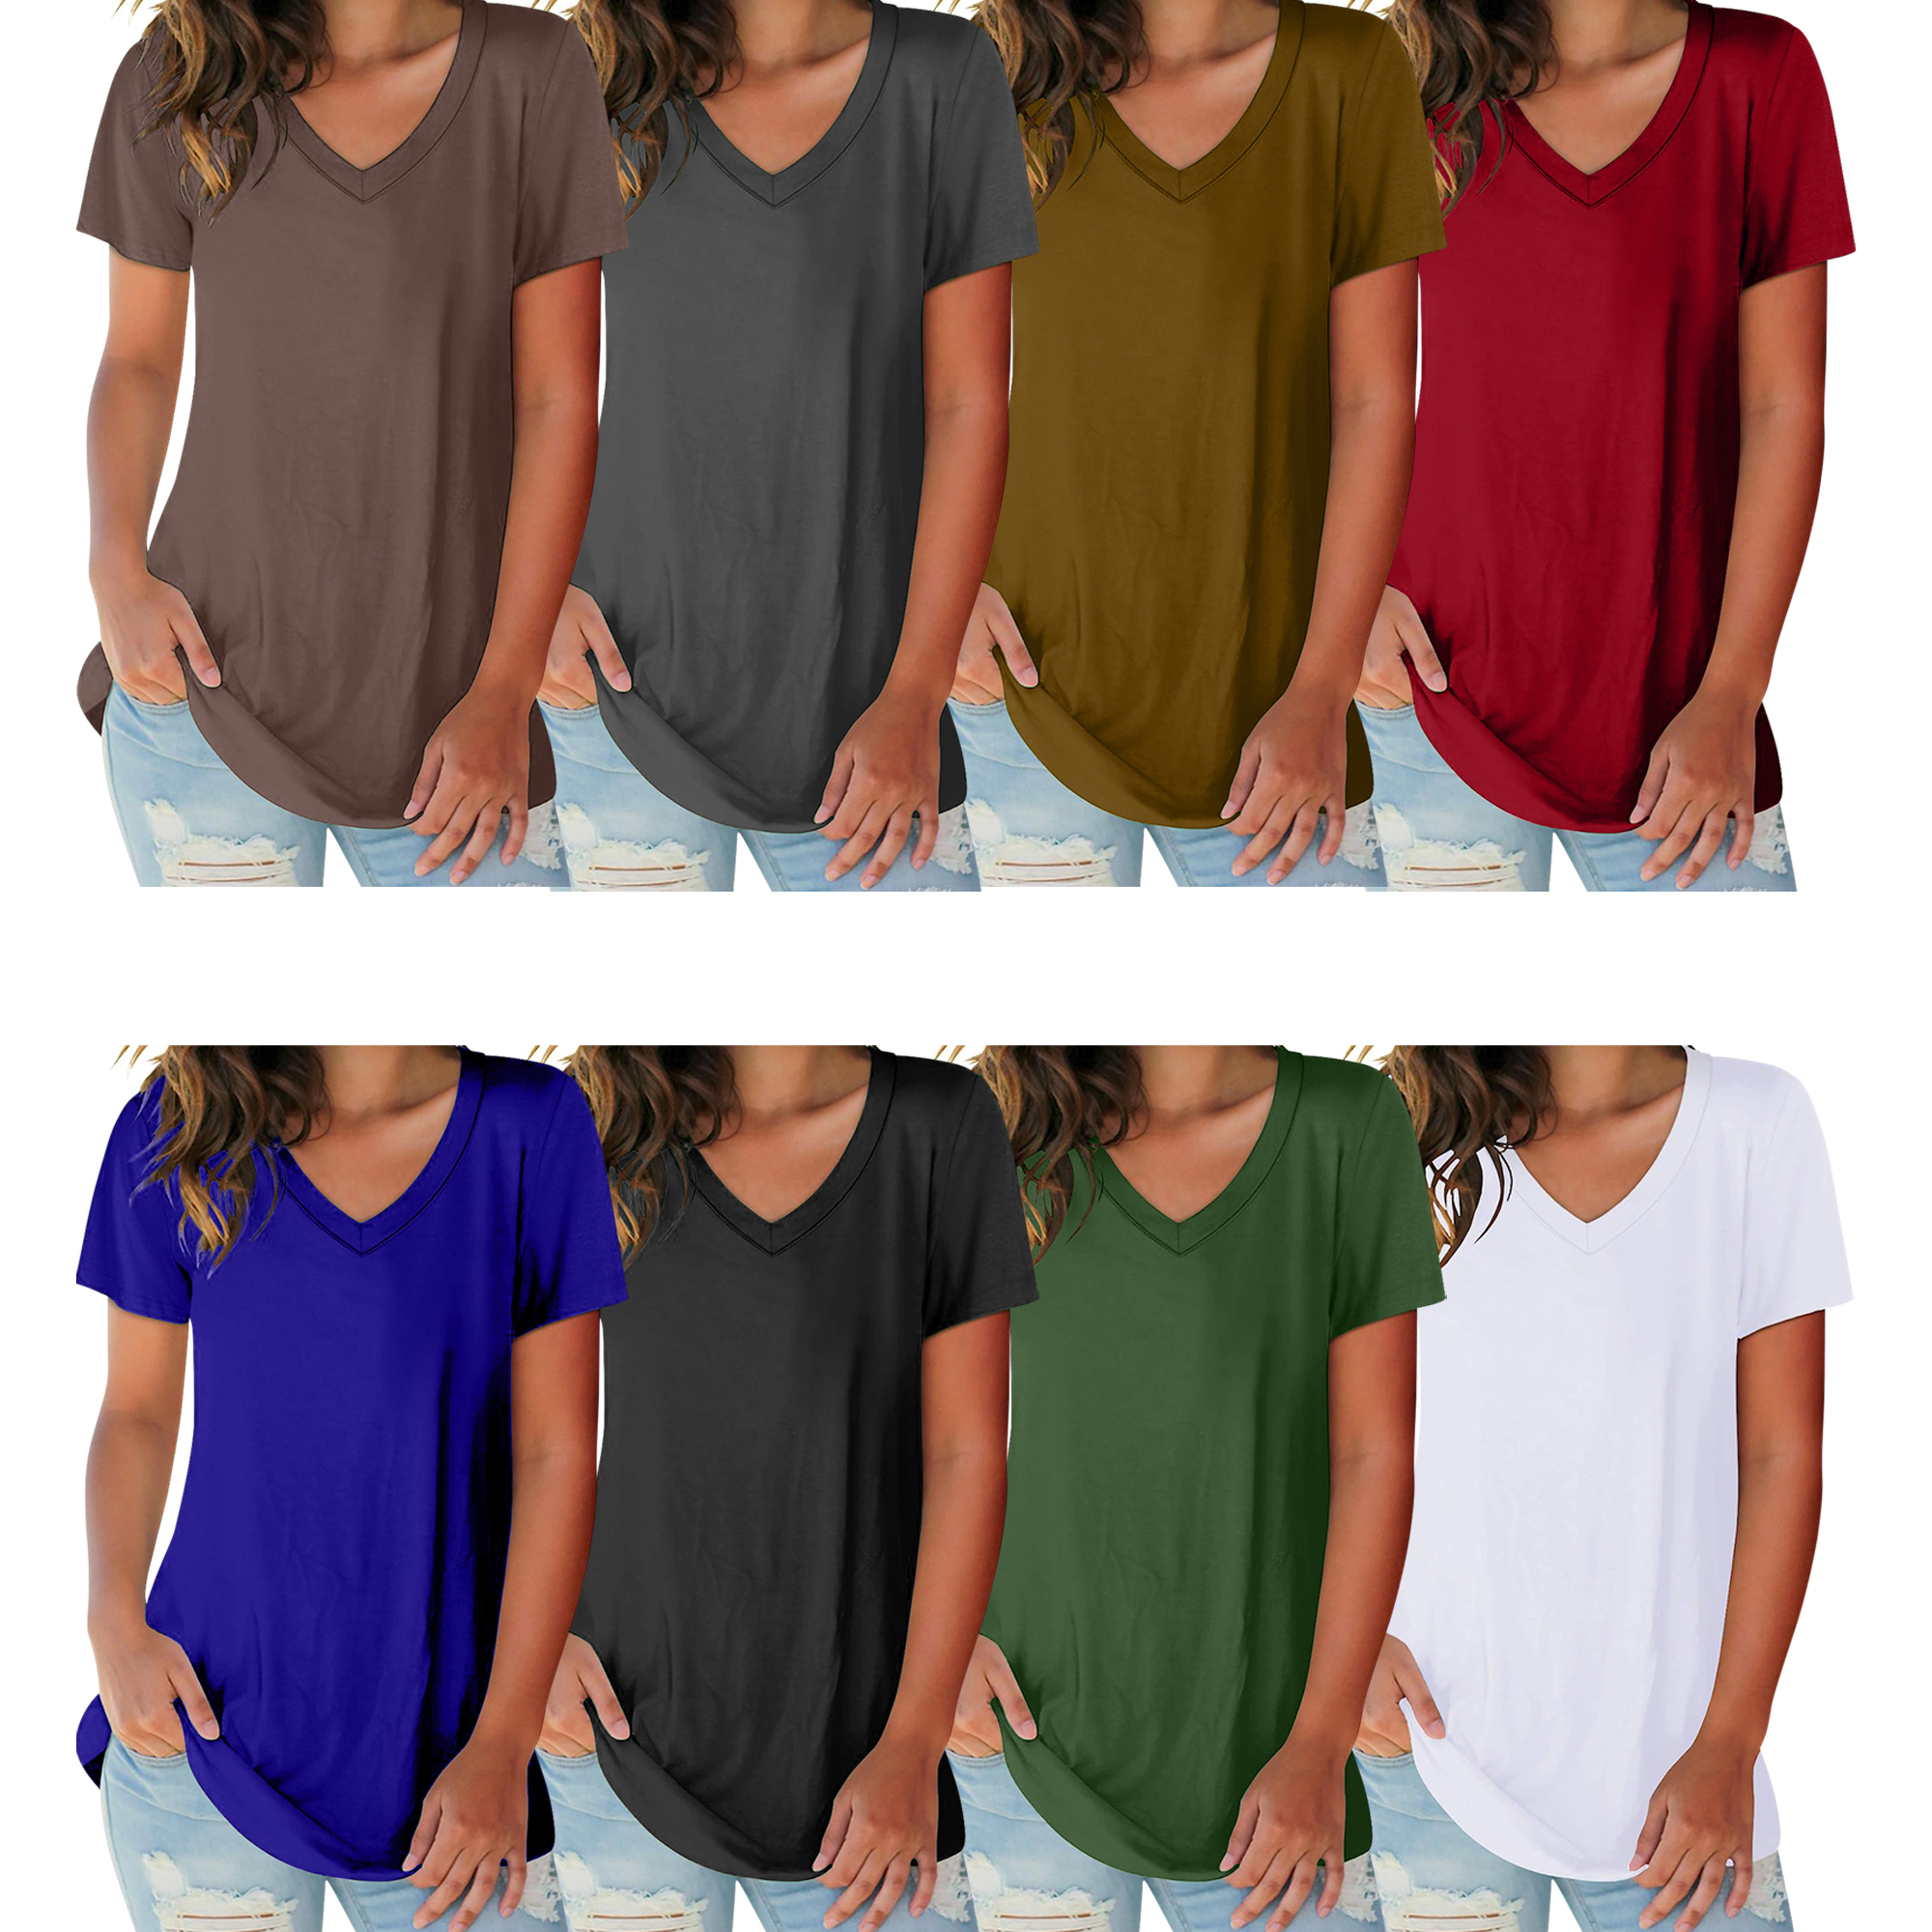 5-Pack: Ladies Ultra Soft Cotton Basic Short Sleeve V-Neck Short Sleeve Summer T-Shirts - X-Large